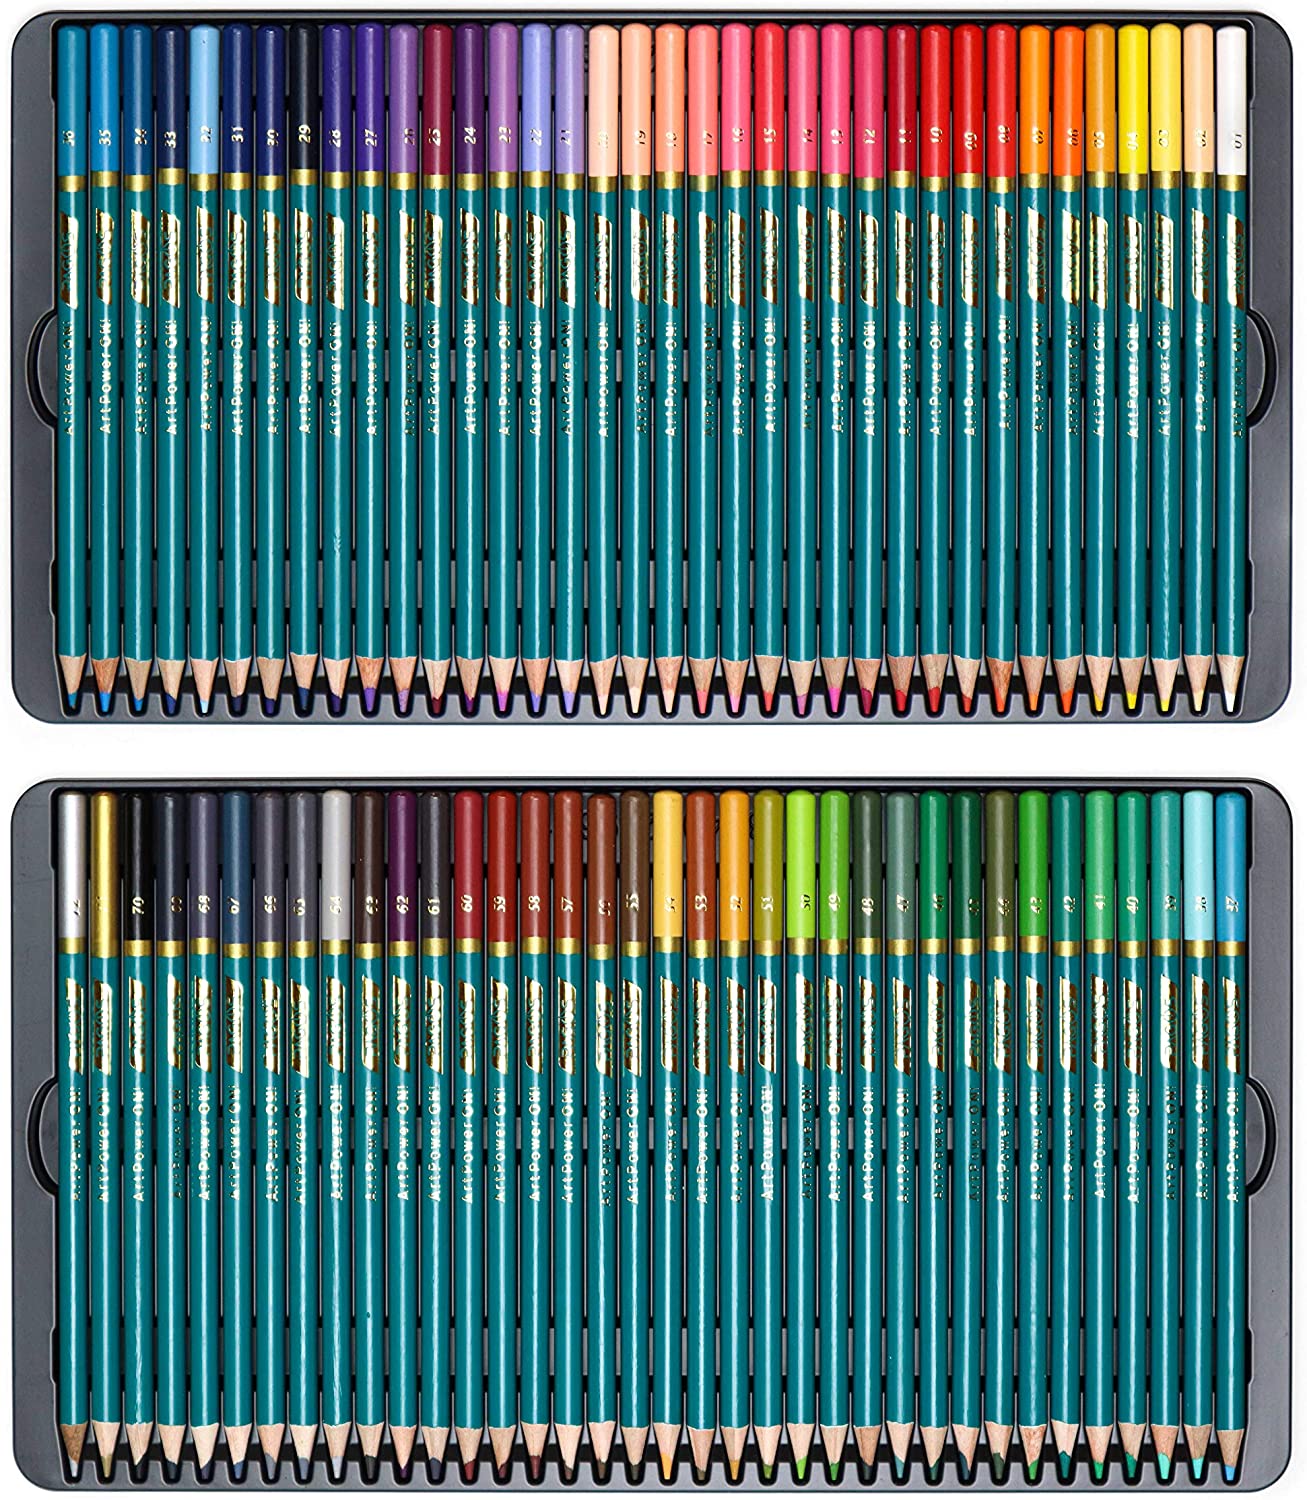 https://pagosart.com/cdn/shop/products/colored-pencil-5.jpg?v=1604400742